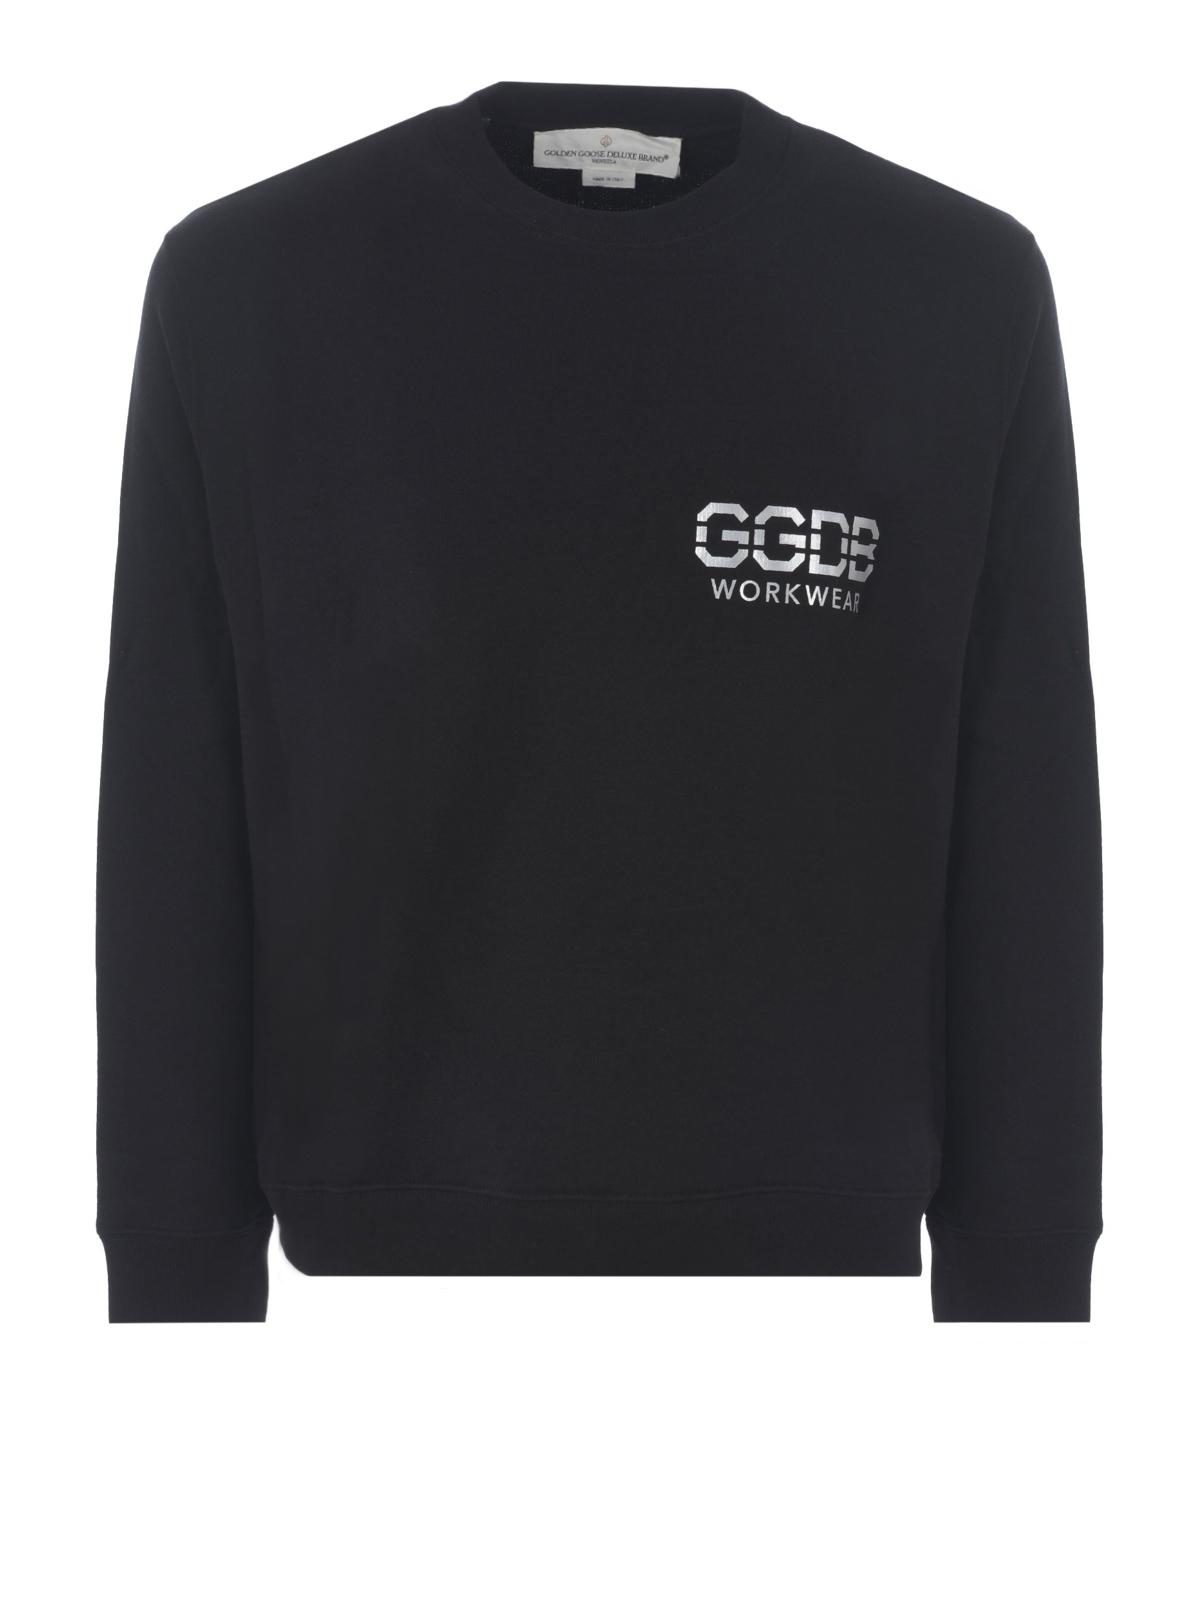 Golden Goose Deluxe Brand GGDB Logo Print Cotton Sweatshirt in Black ...